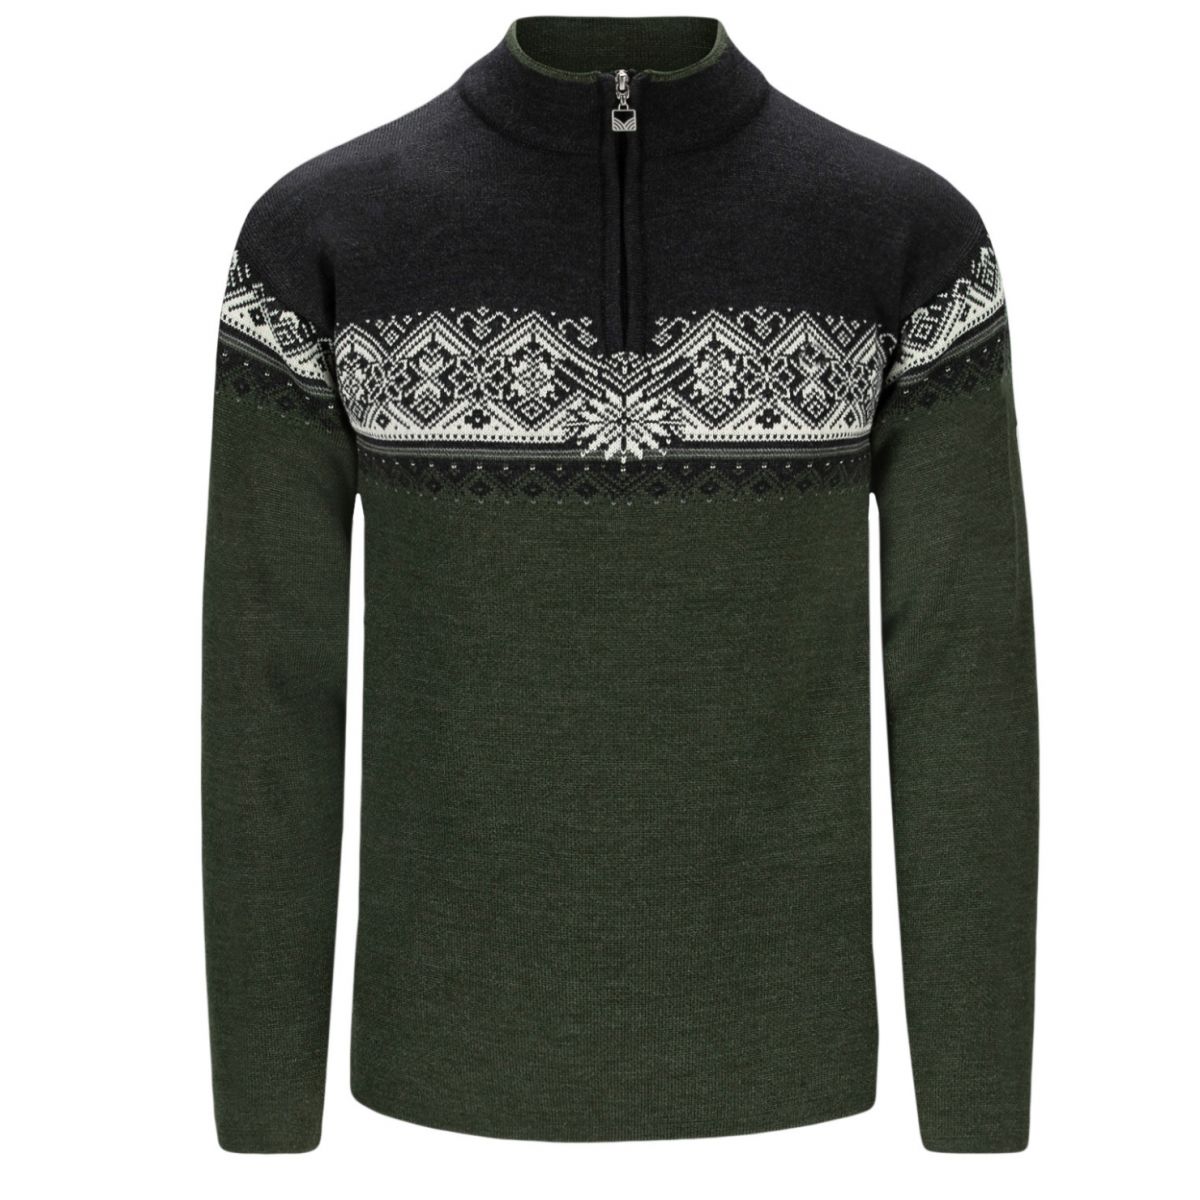 Dale of Norway Moritz, sweater, herre, mørkegrøn